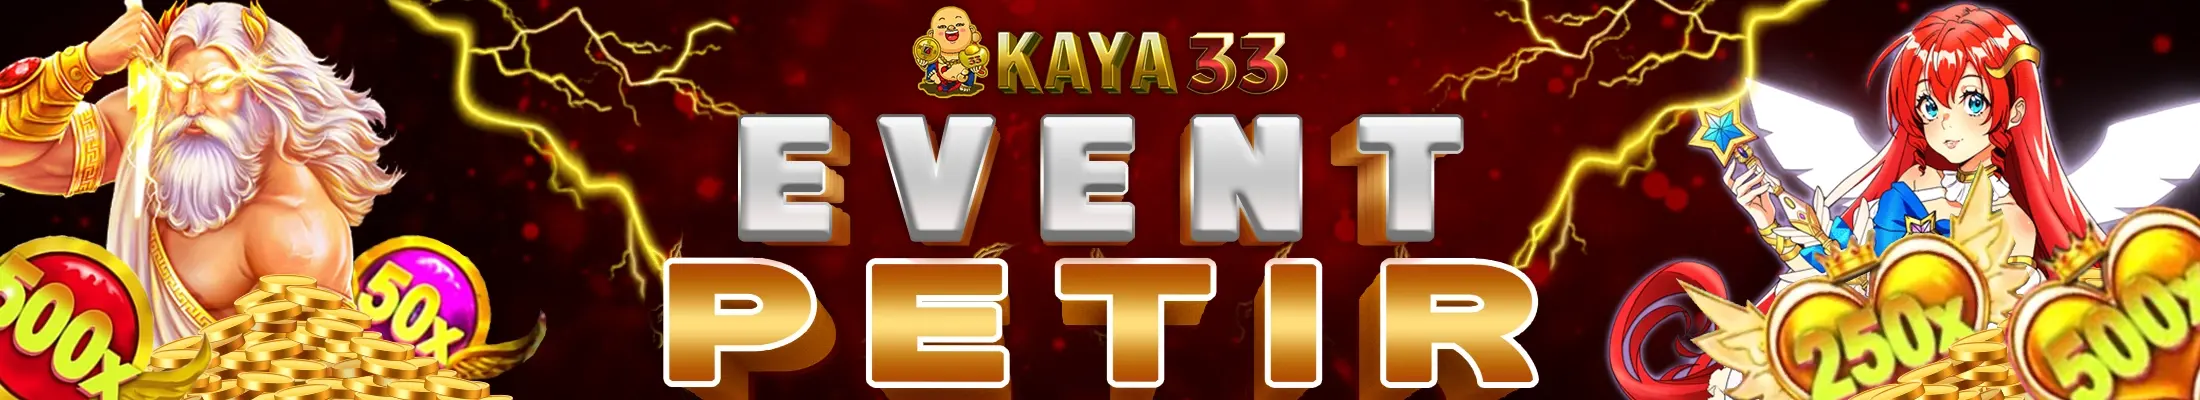 EVENT PETIR KAYA33